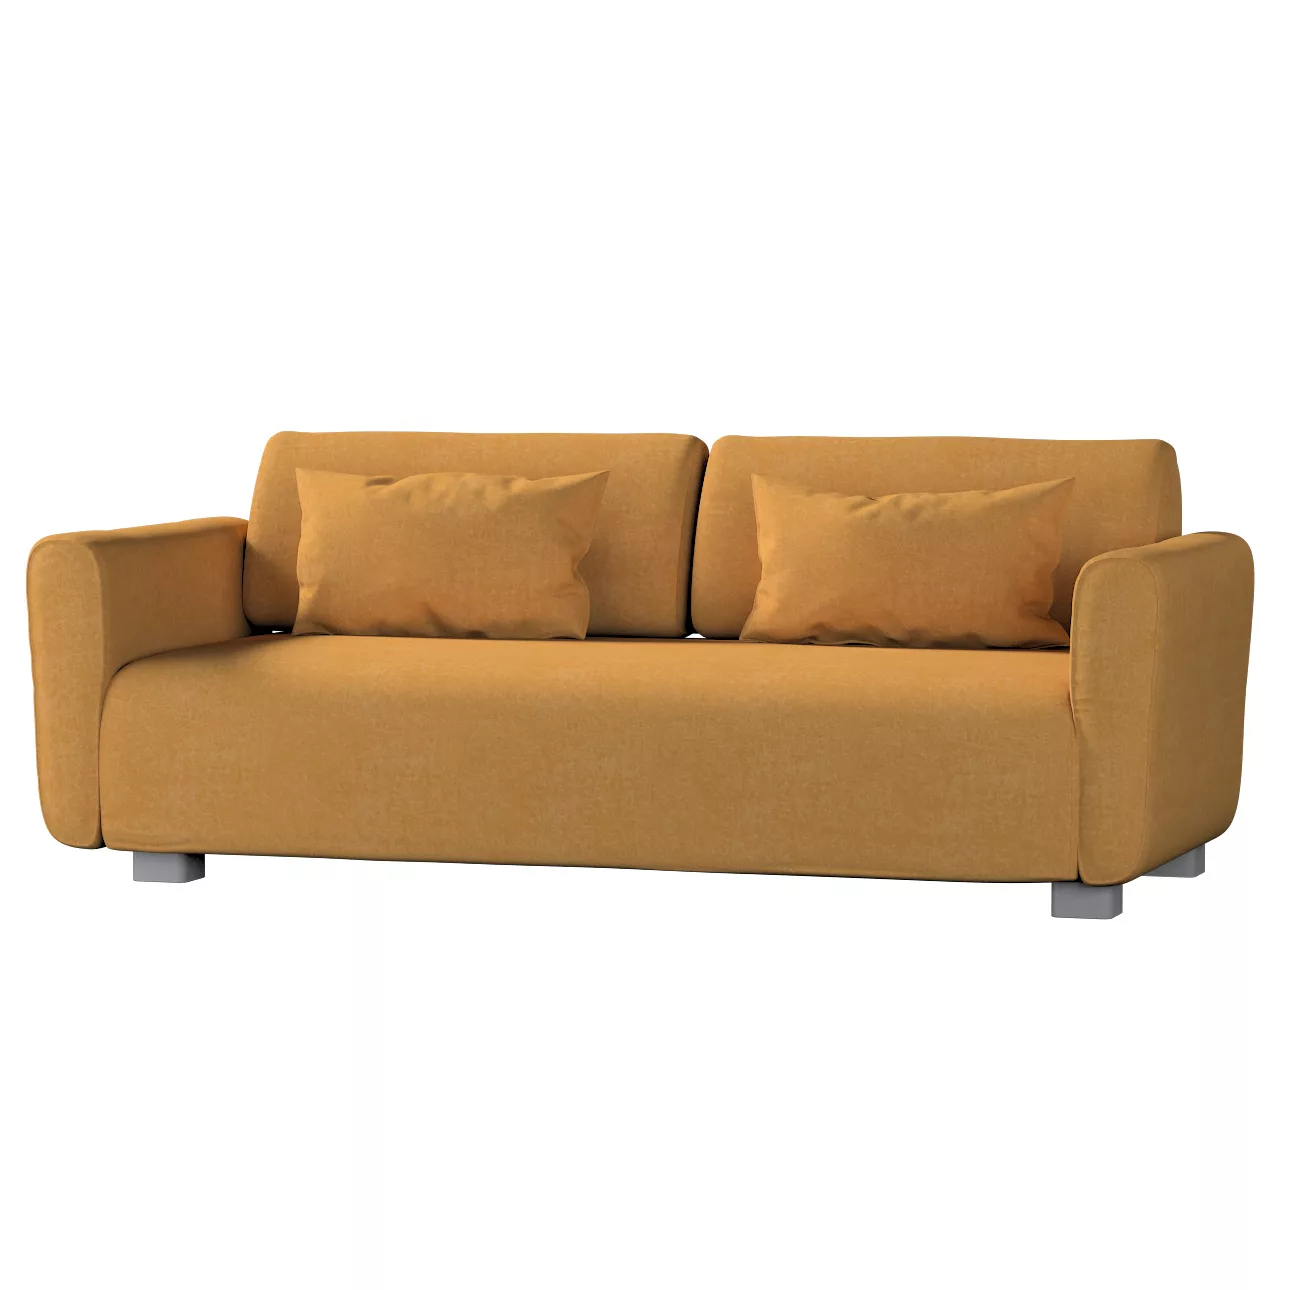 Bezug für Mysinge 2-Sitzer Sofa, honiggelb, Sofabezug Mysinge 2-Sitzer, Che günstig online kaufen